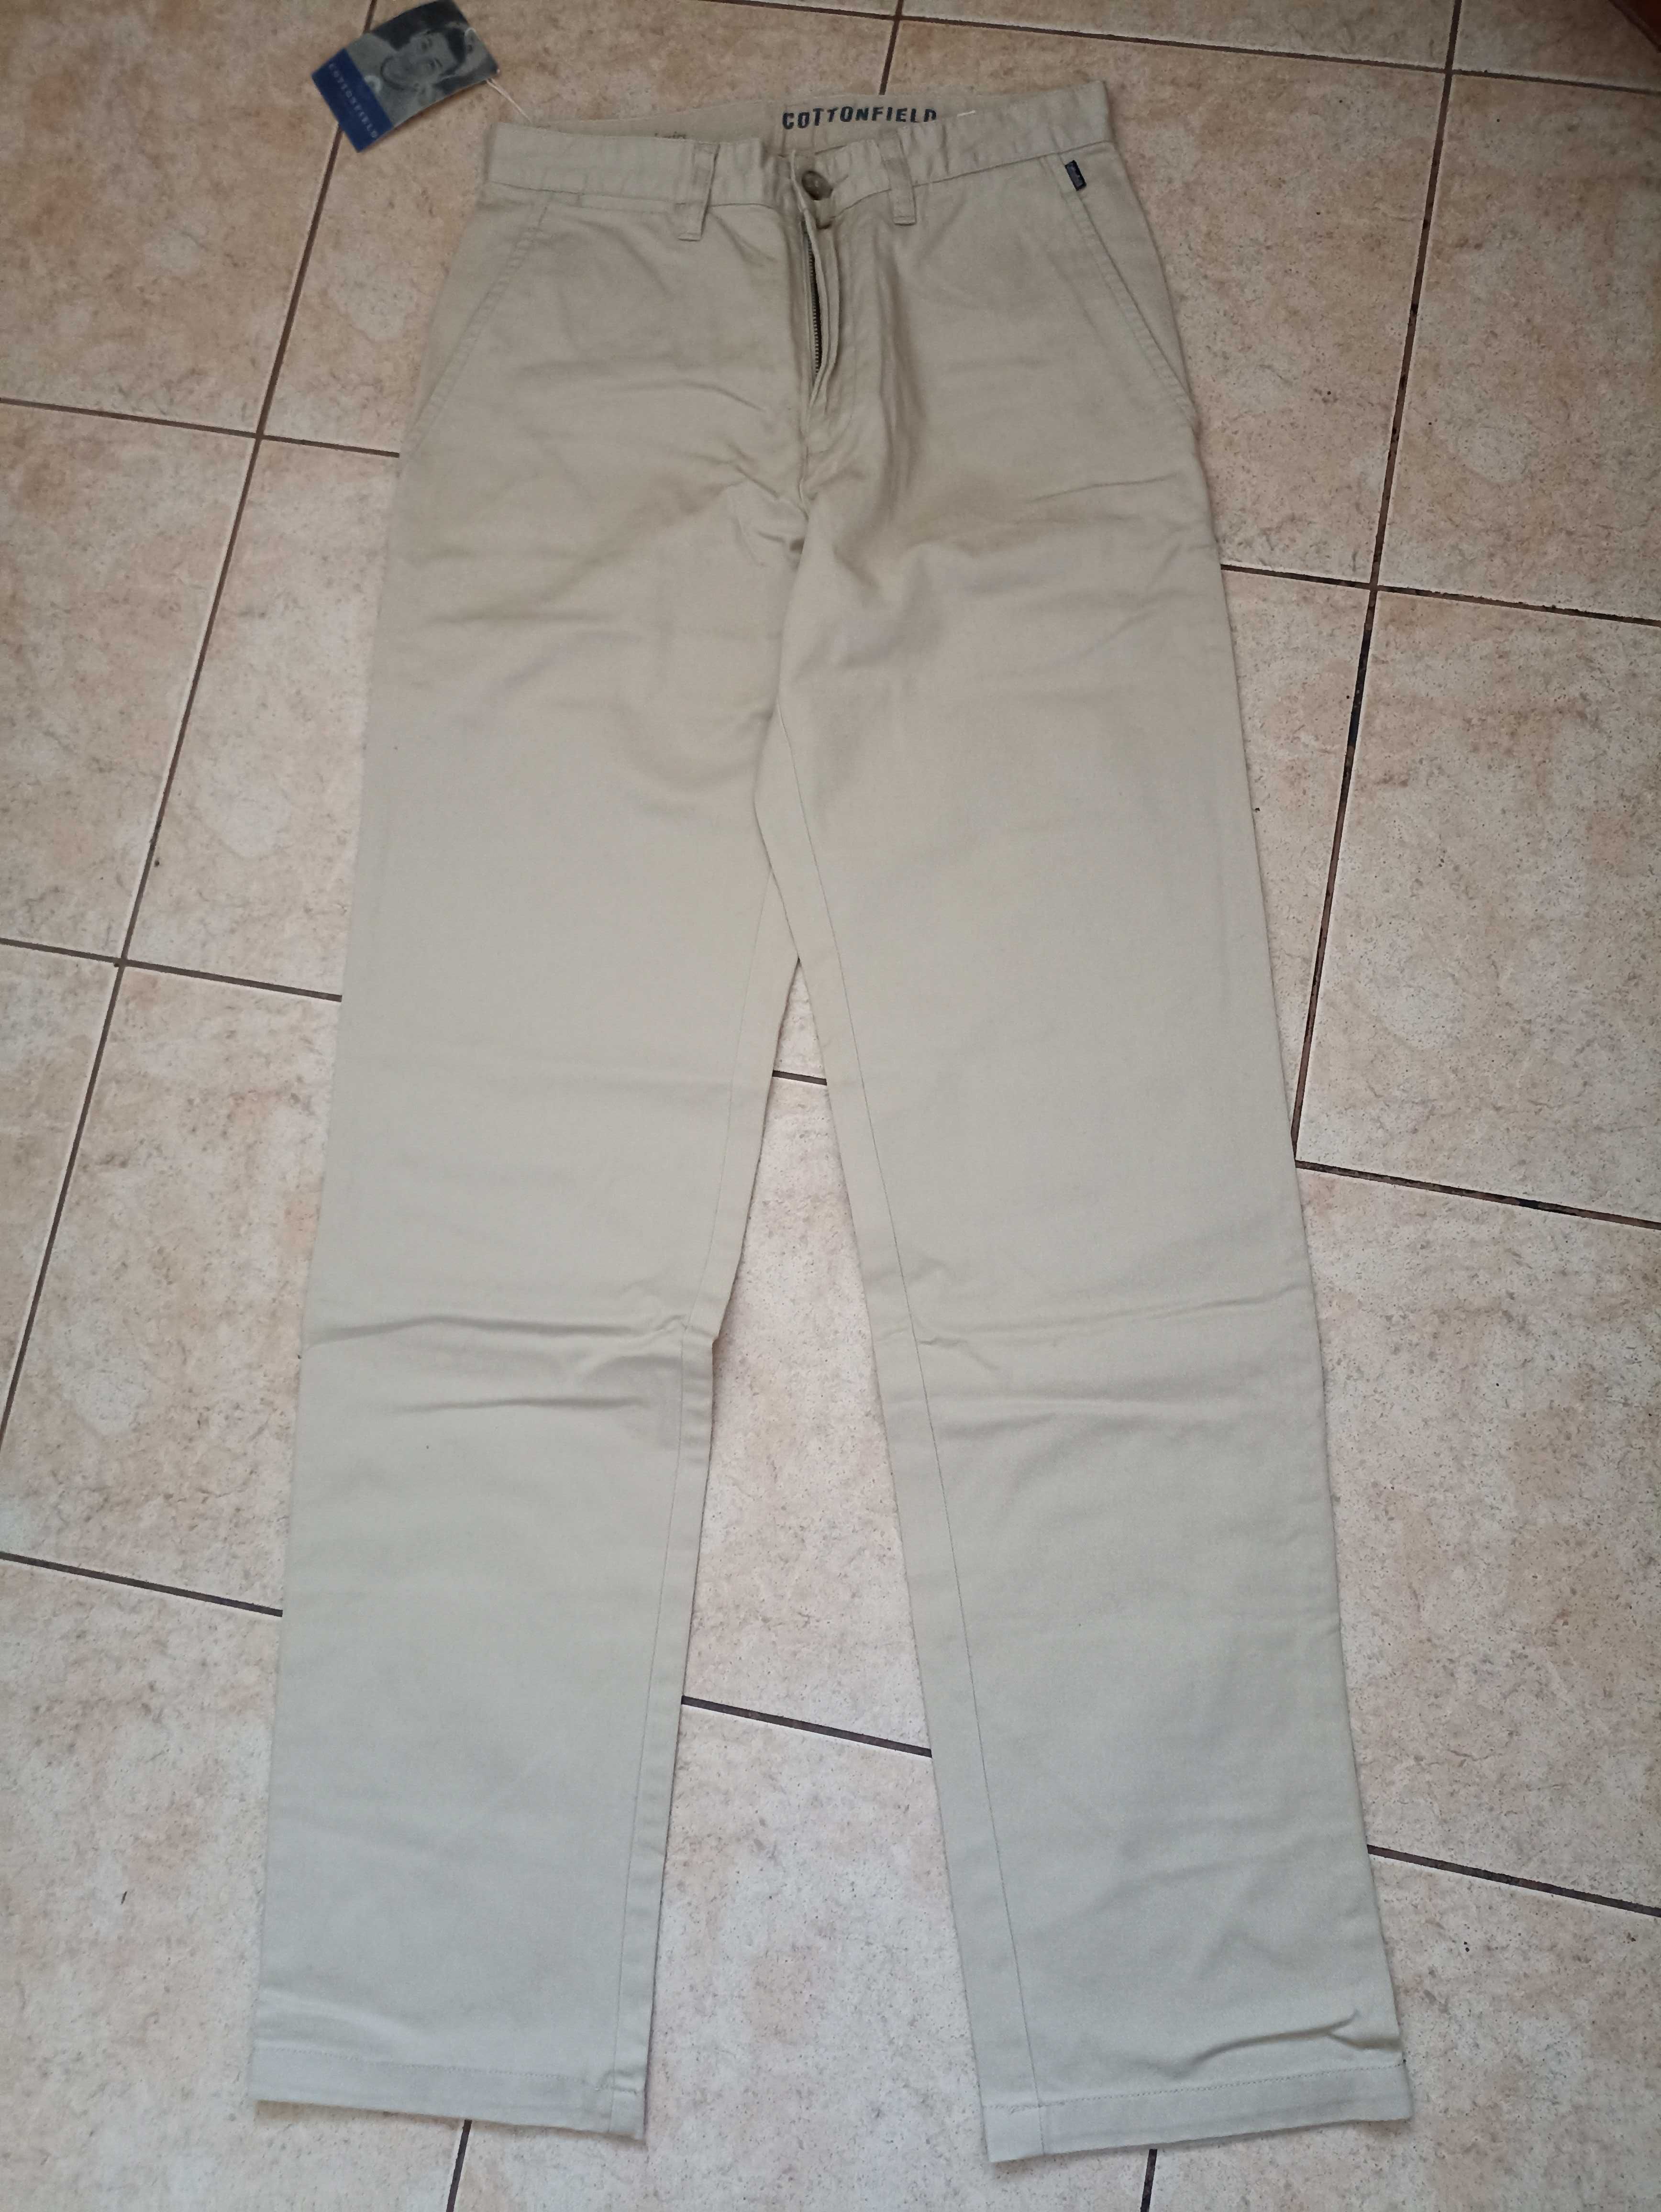 Spodnie Jackpot Cottonfield Męskie NOWE, rozmiar 29